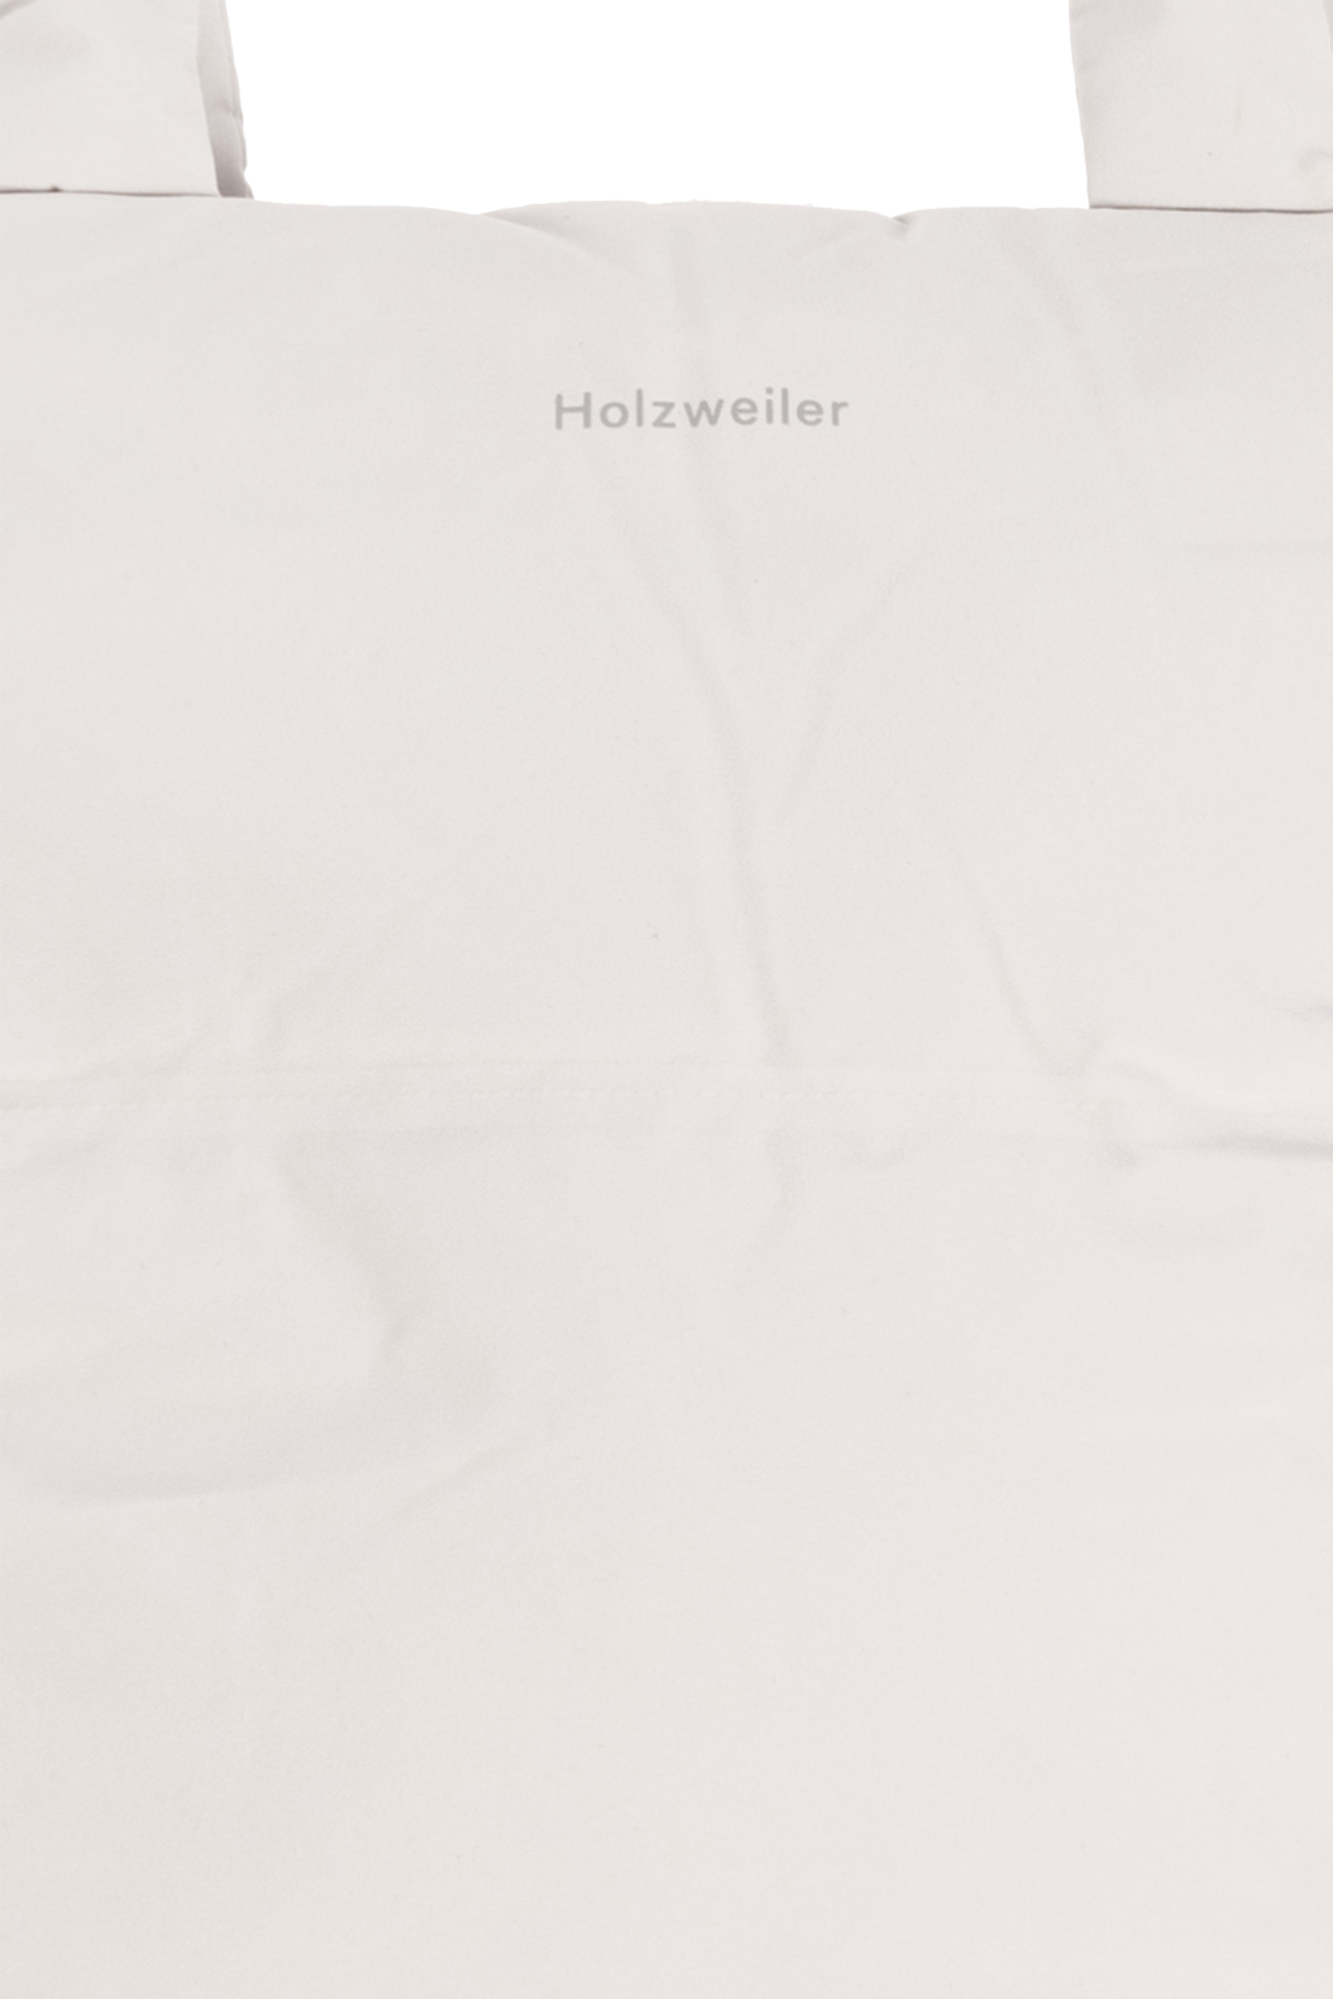 Holzweiler ‘Ulriken’ shopper Raf bag